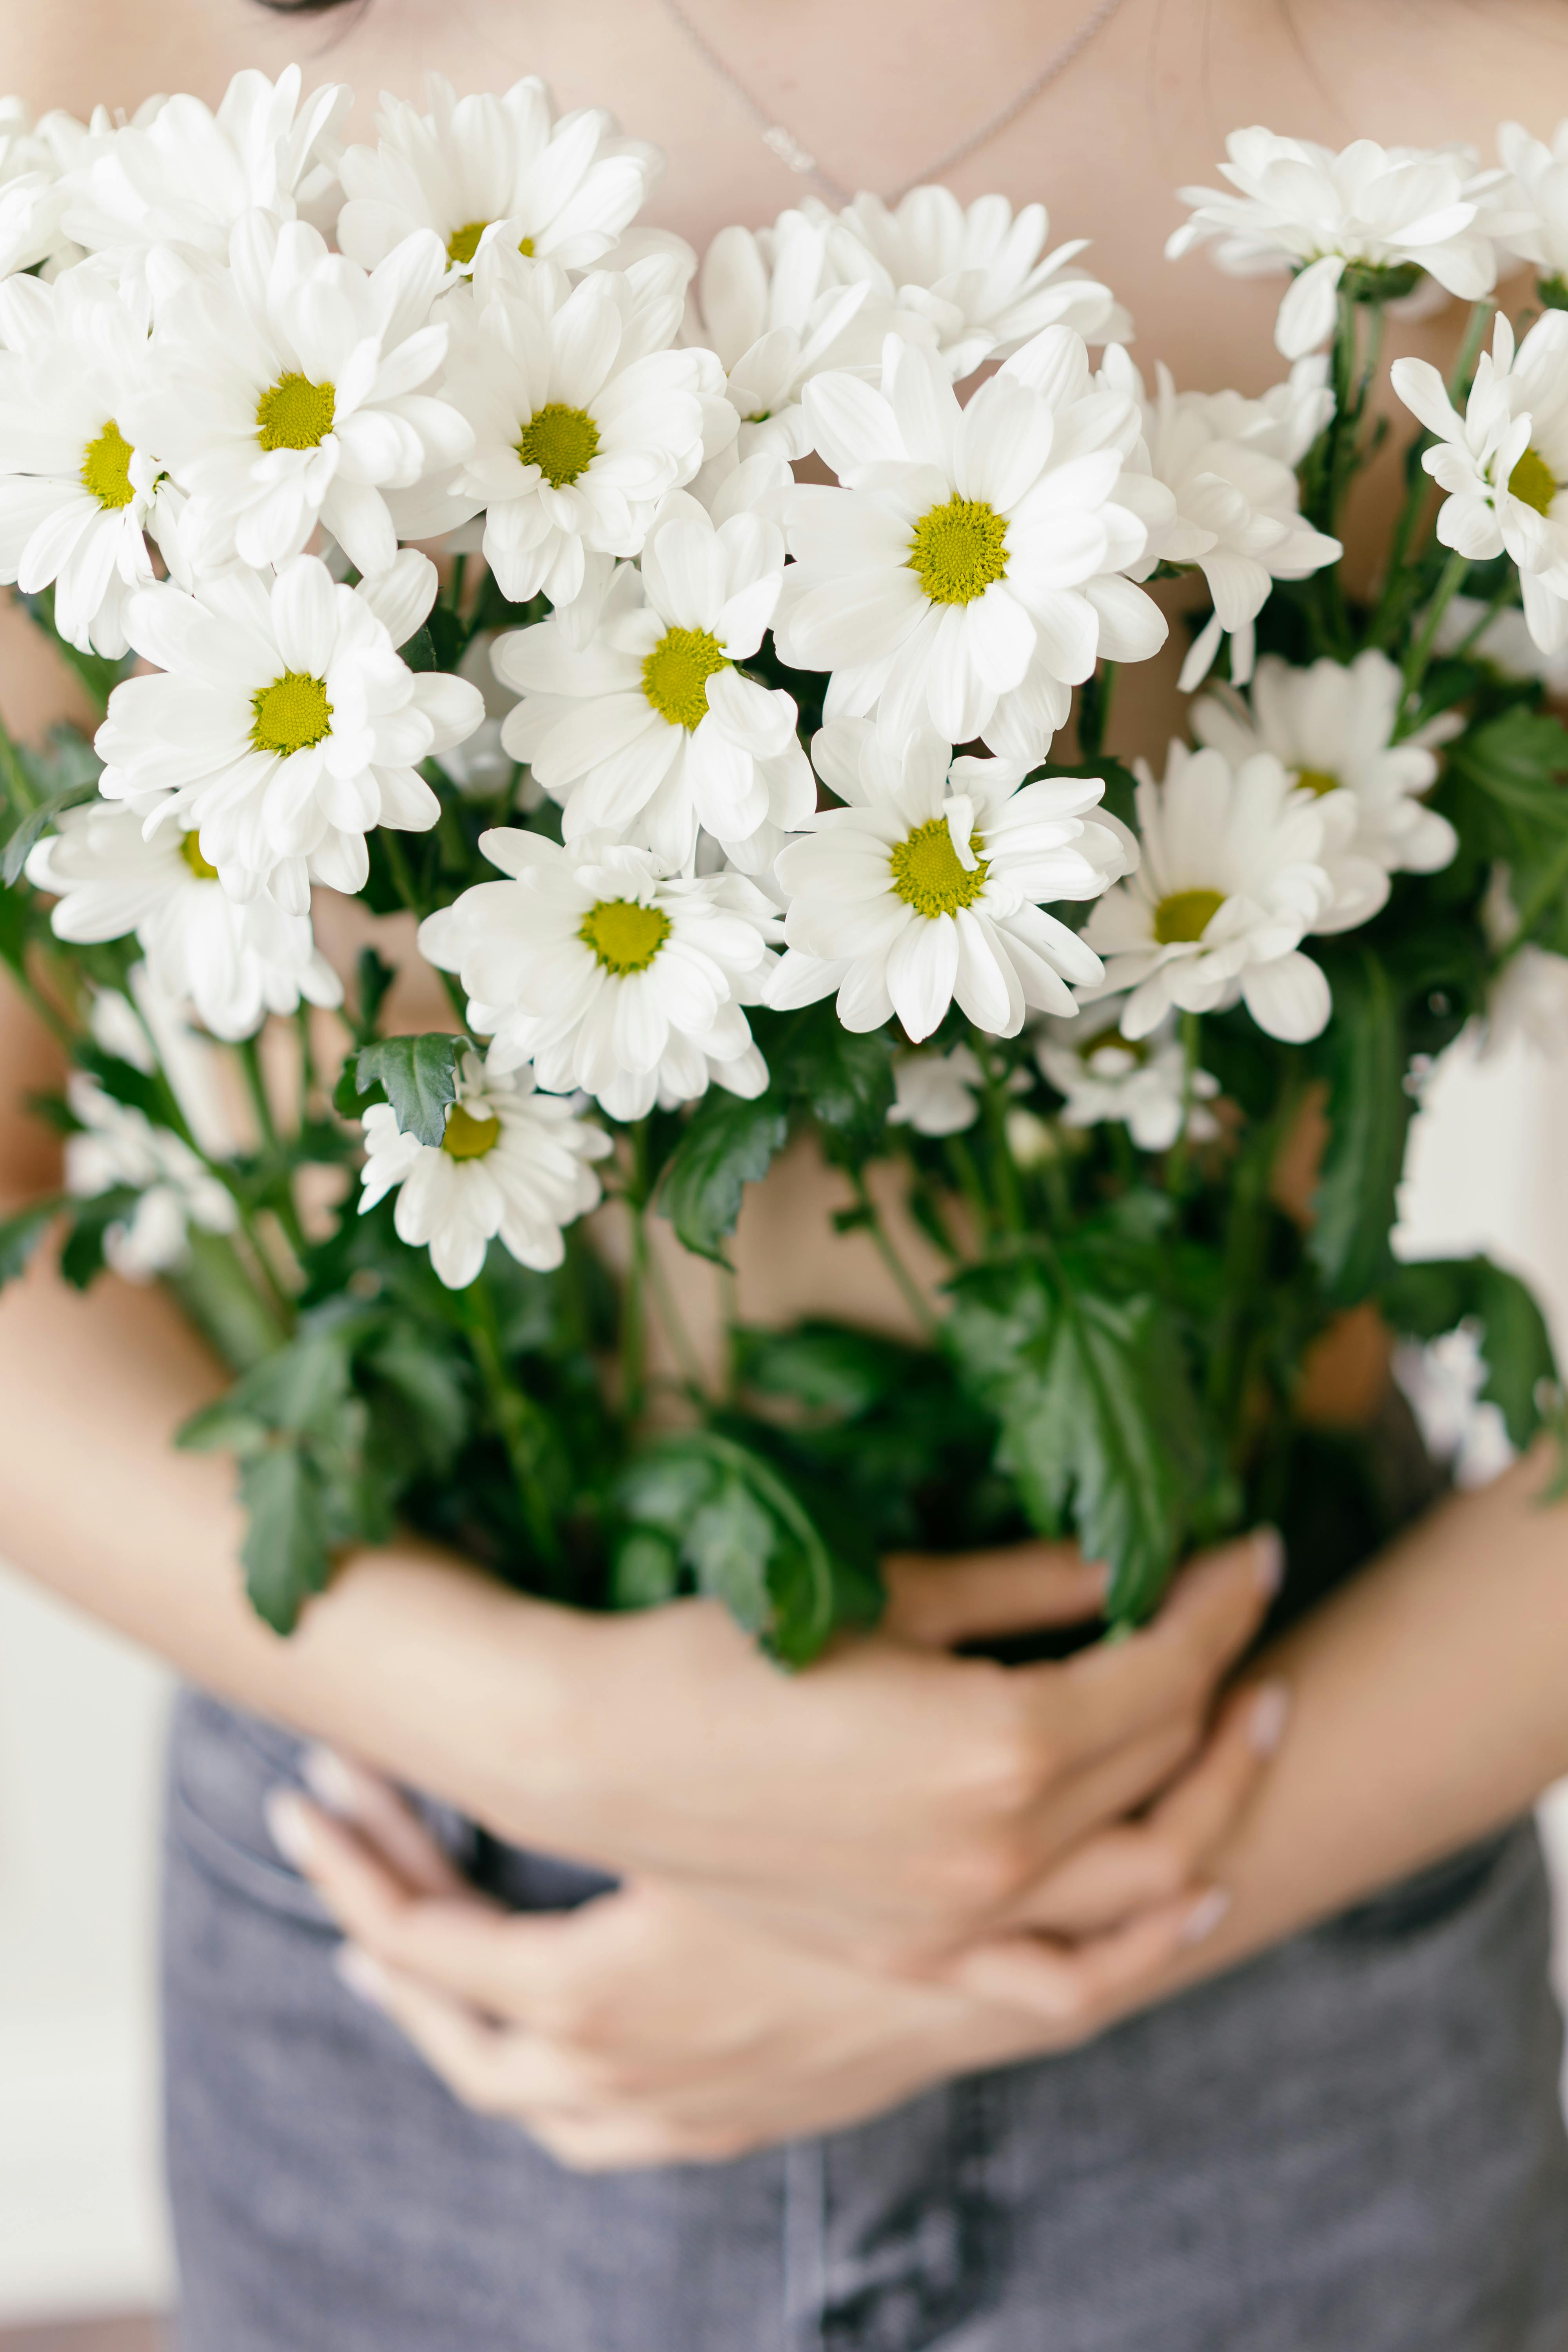 Hoa trắng là biểu tượng cho sự trong sáng và tinh khiết. Hình ảnh của chúng sẽ làm bạn cảm thấy êm ái và thư giãn, và đưa bạn đến với những khoảnh khắc đẹp nhất trong thiên nhiên.